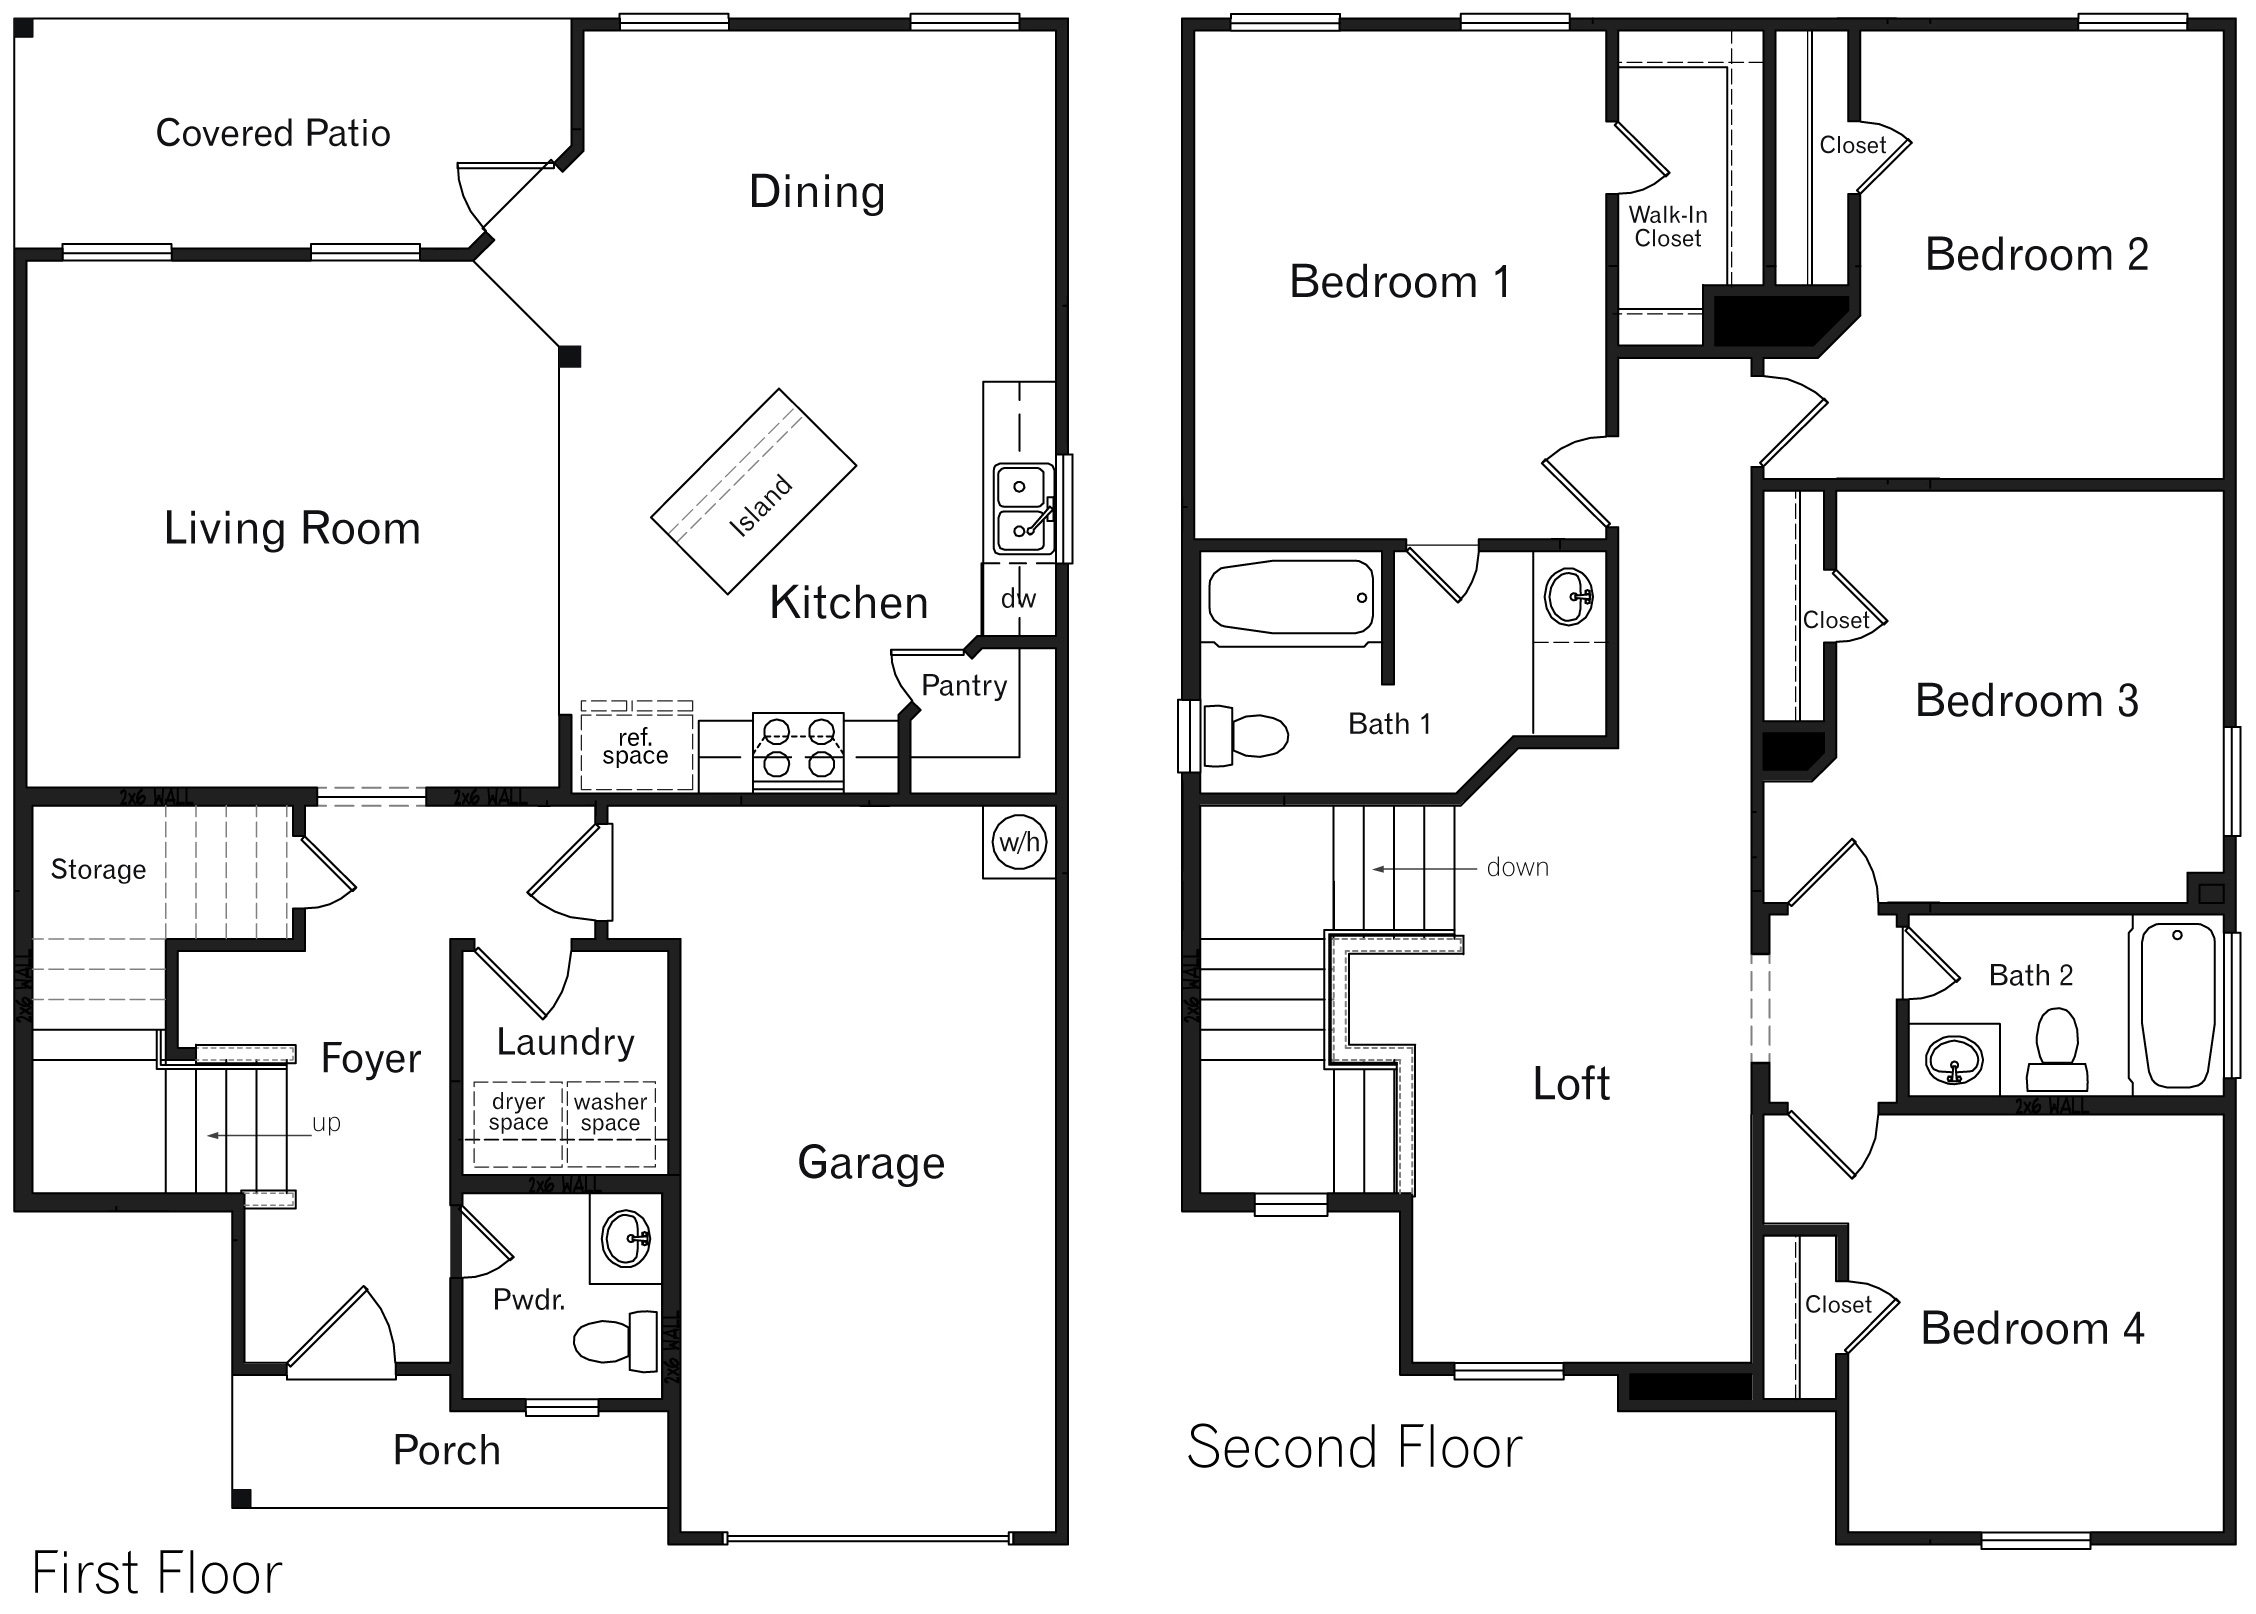 DR Horton San Antonio Laurel Vistas the bowie floor plan 1839 square feet 4 bedroom 2.5 bathroom 2 story 1 car garage